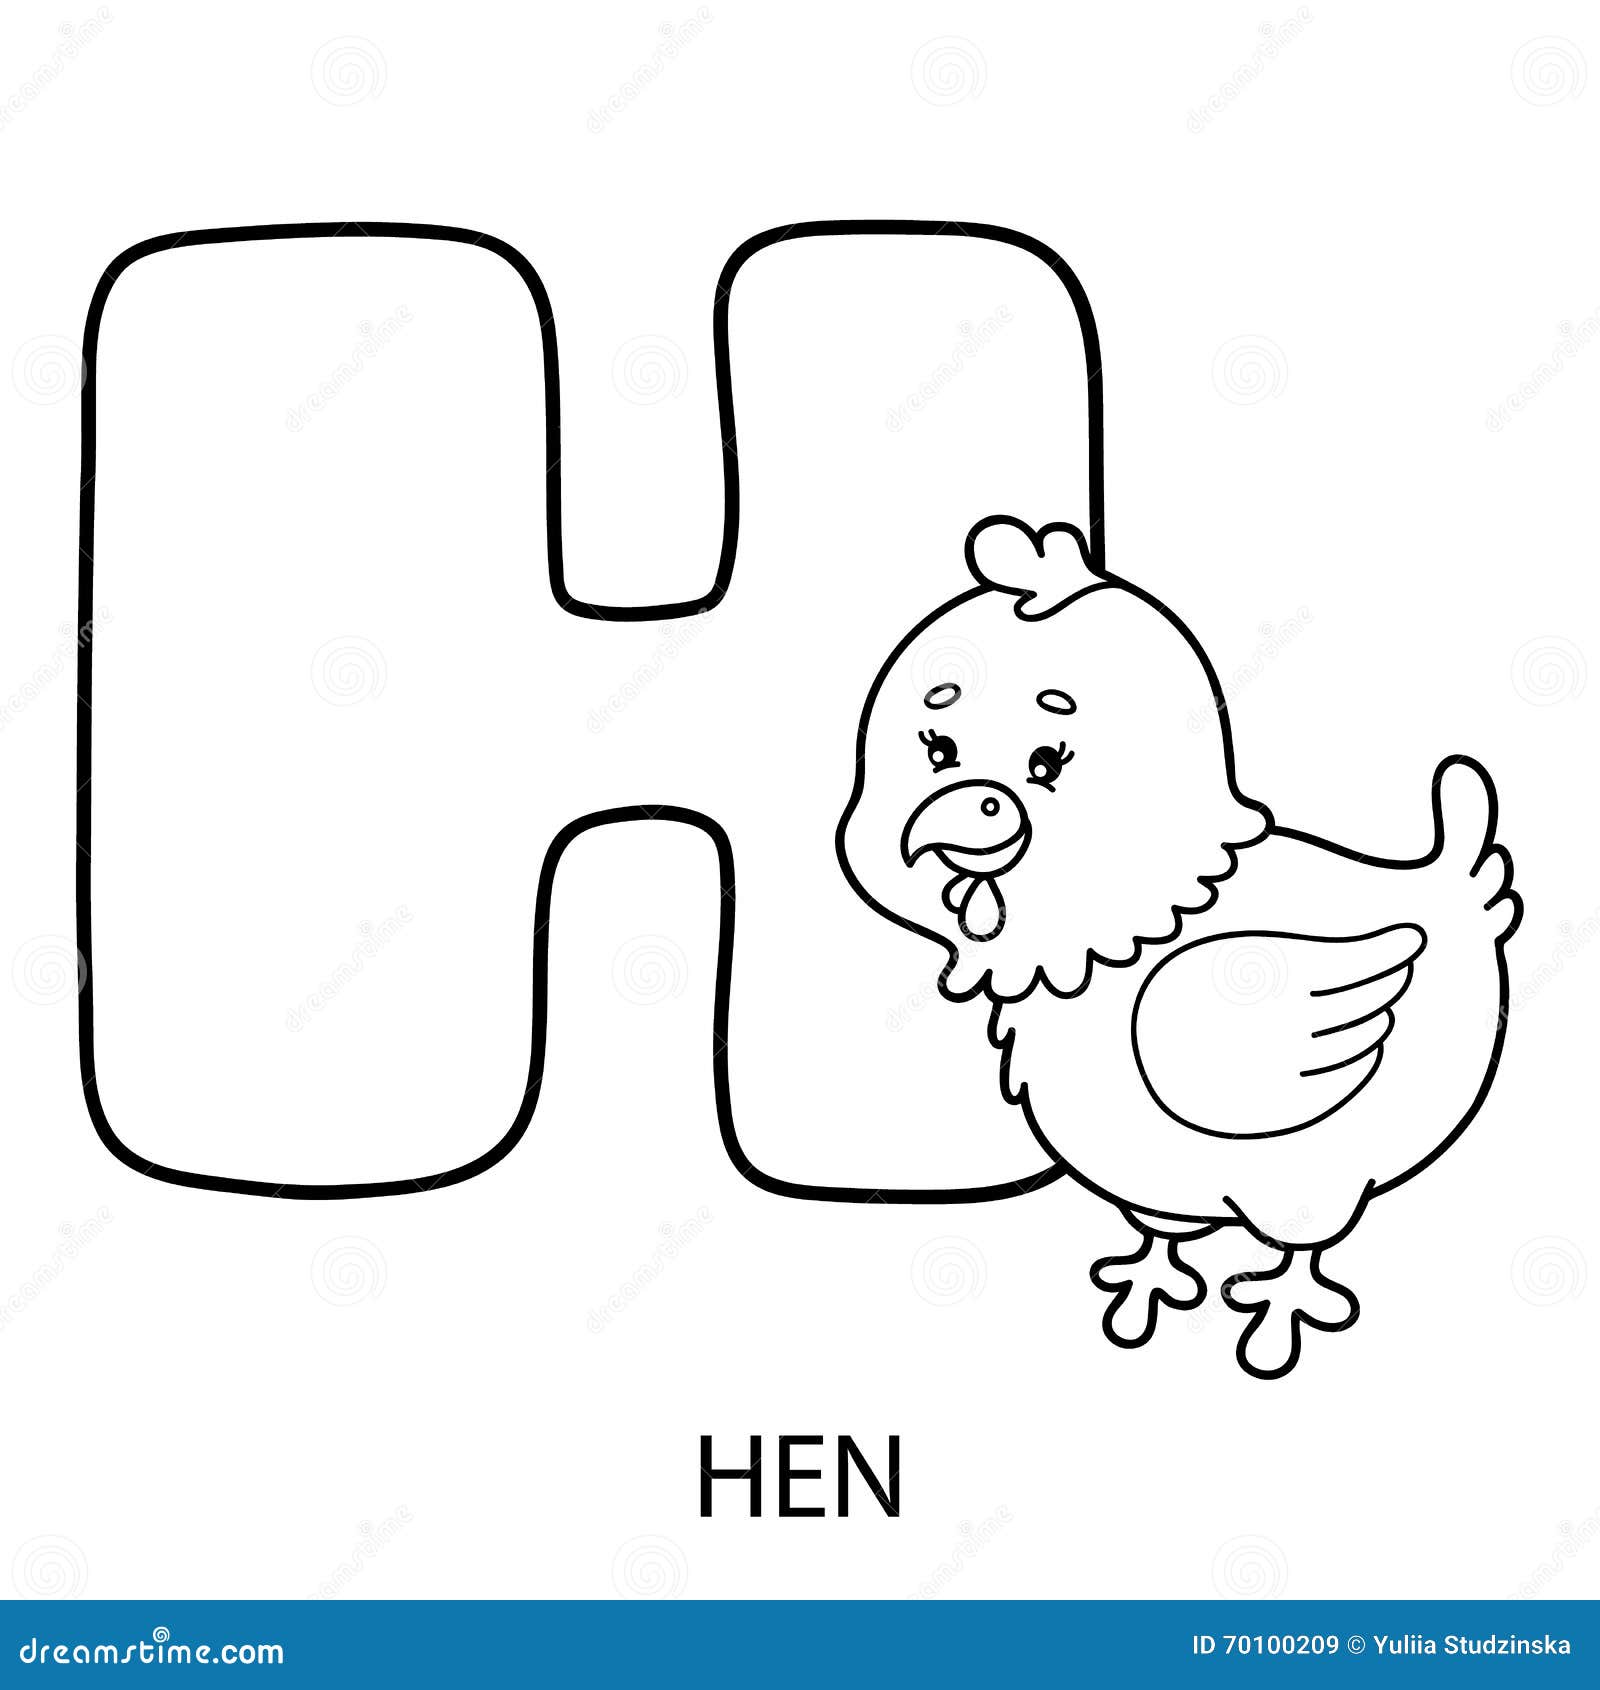 Буква h значение. Буква н рисунок. Английское слово Hen буква h. Буква к Курочка. Буква н в виде животного.